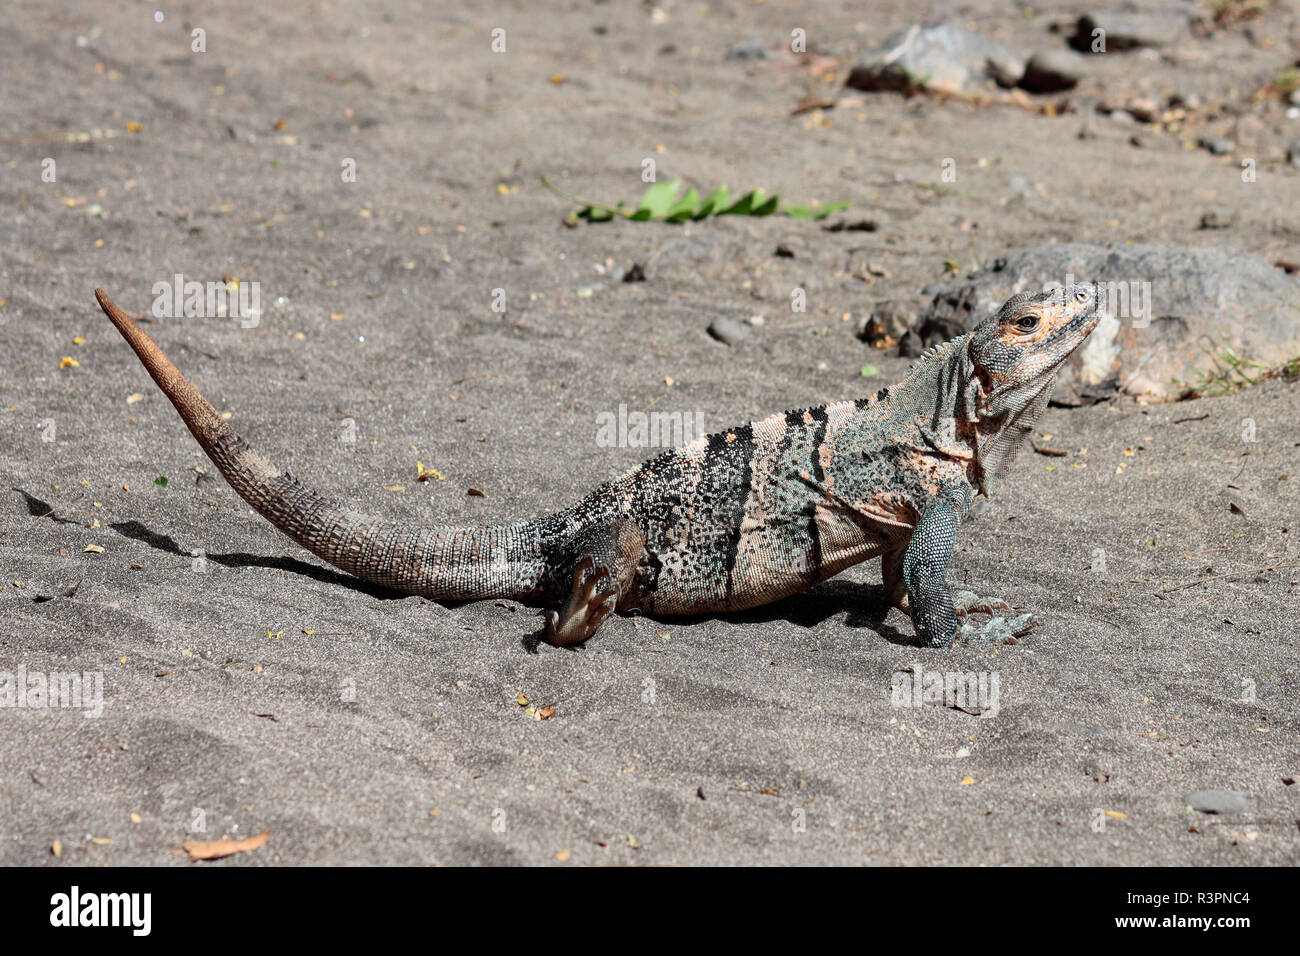 Eine Ctenasaur iguana sonnen sich am Strand Playa Matapalo, Guanacaste, Costa Rica Stockfoto